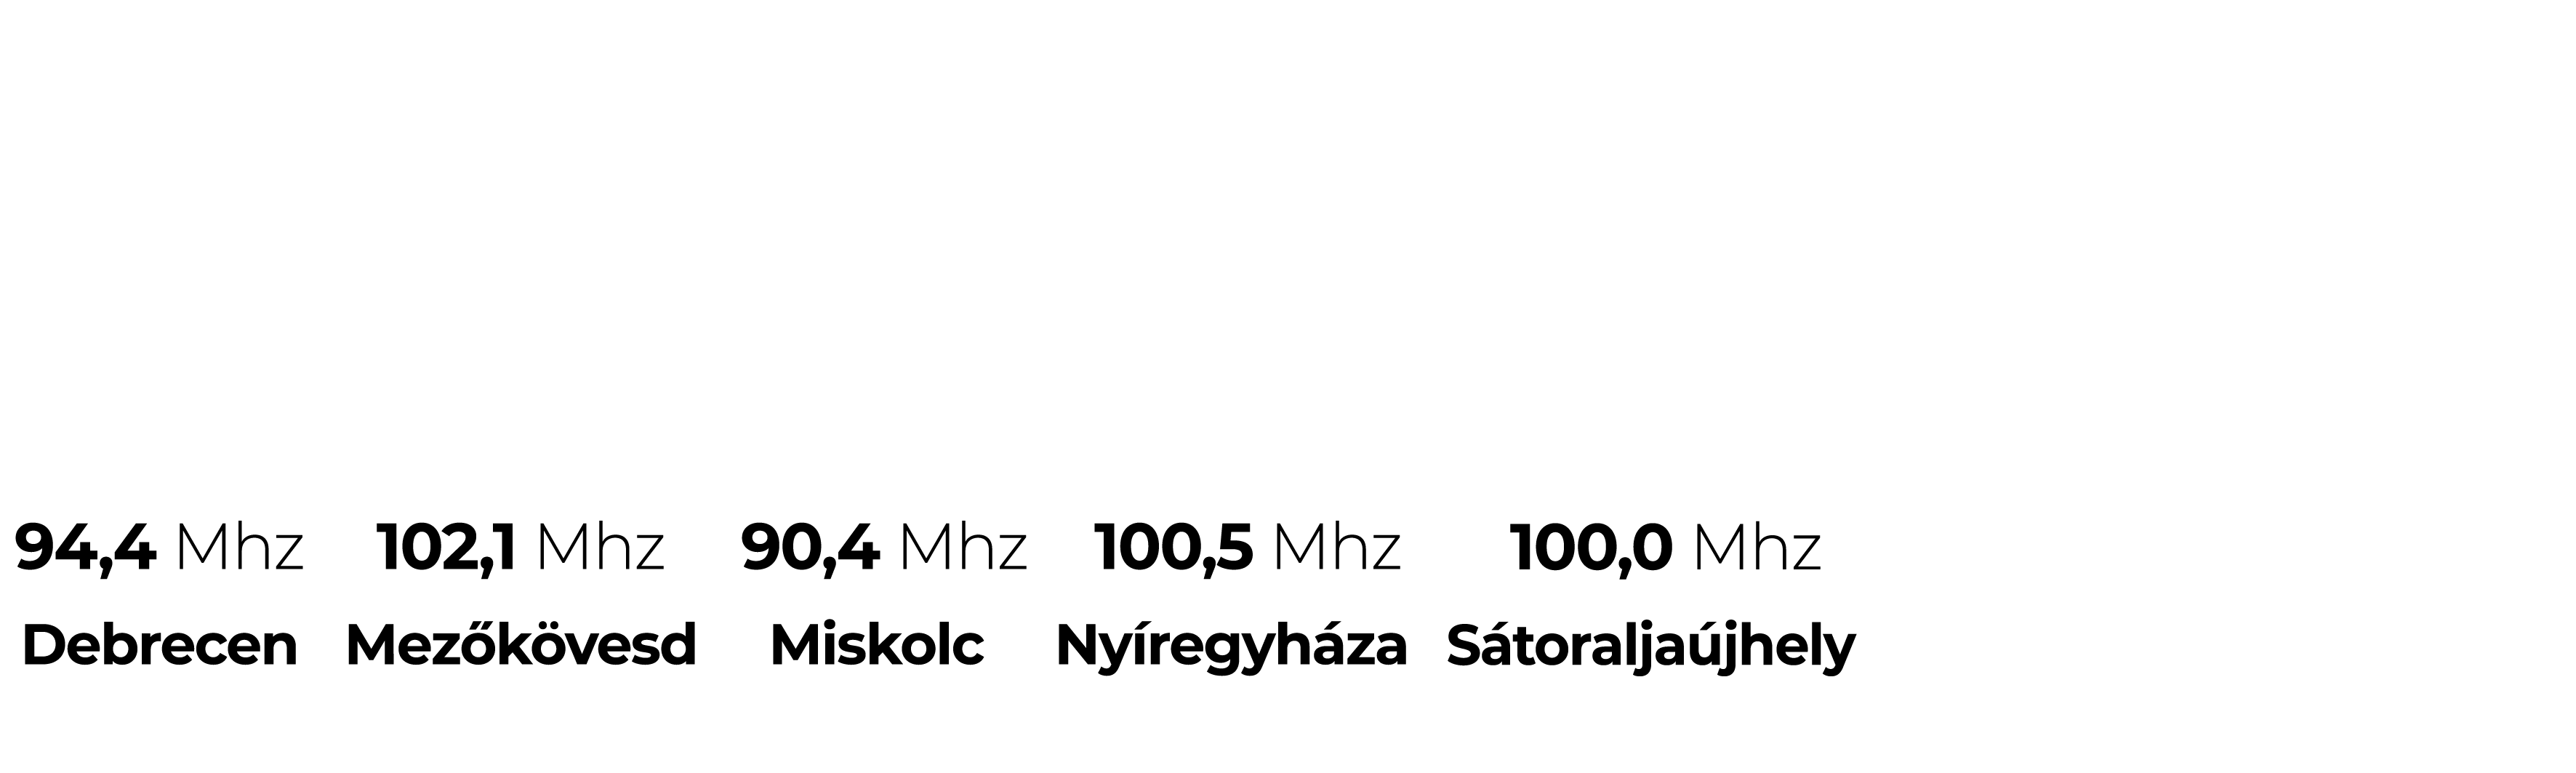 slide-logo-szetszedve-03.png